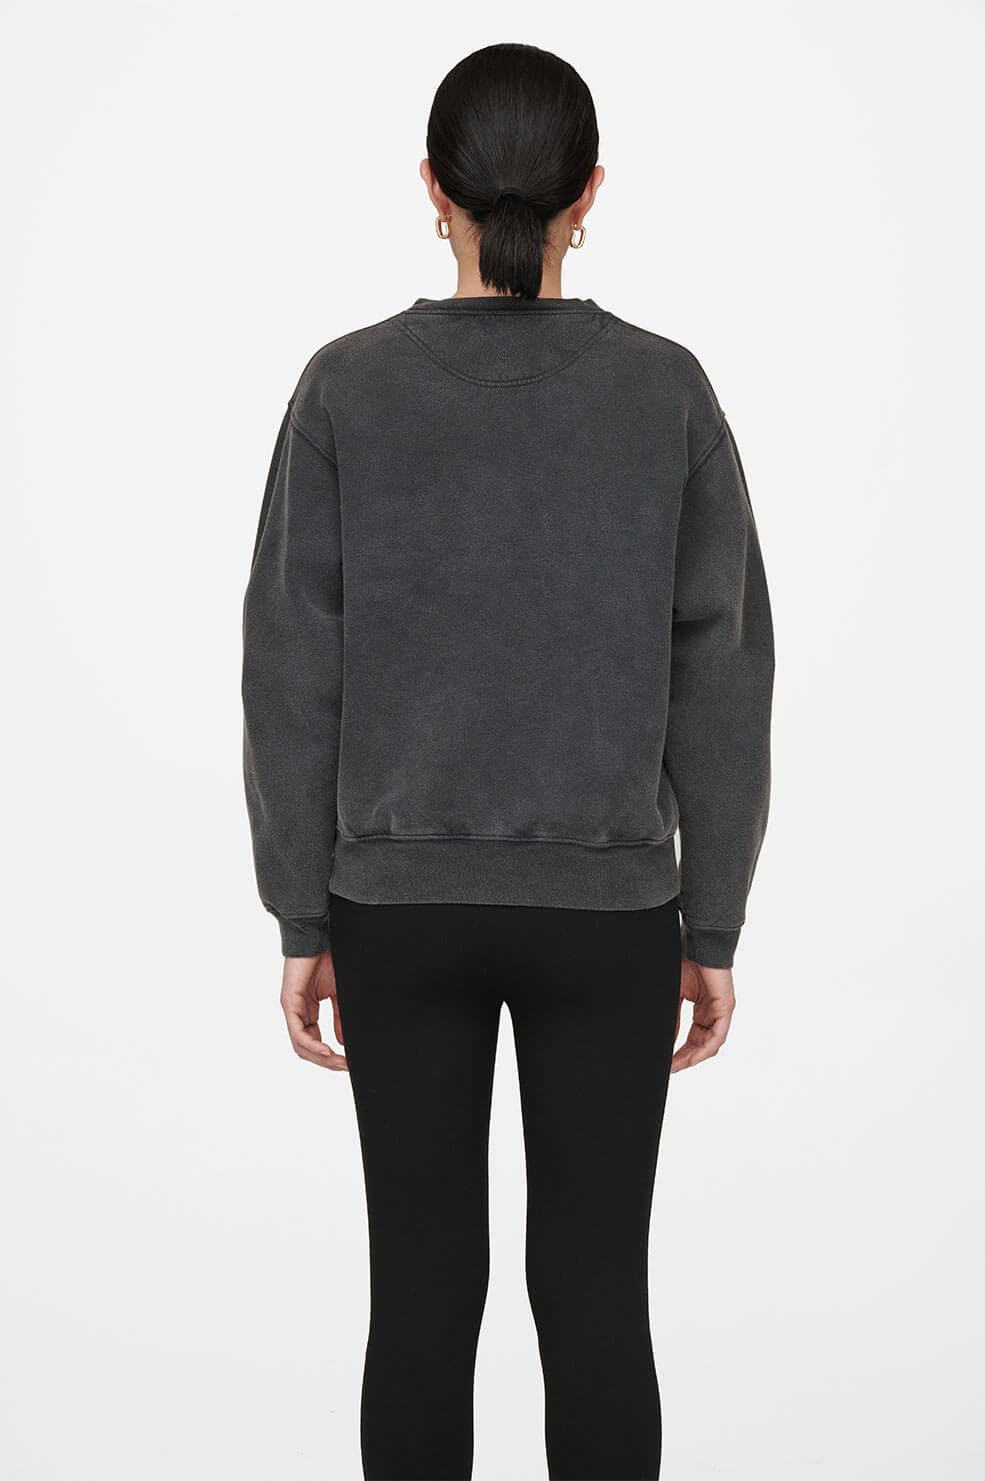 Anine Bing: Ramona printed sweatshirt 'Paris', washed black